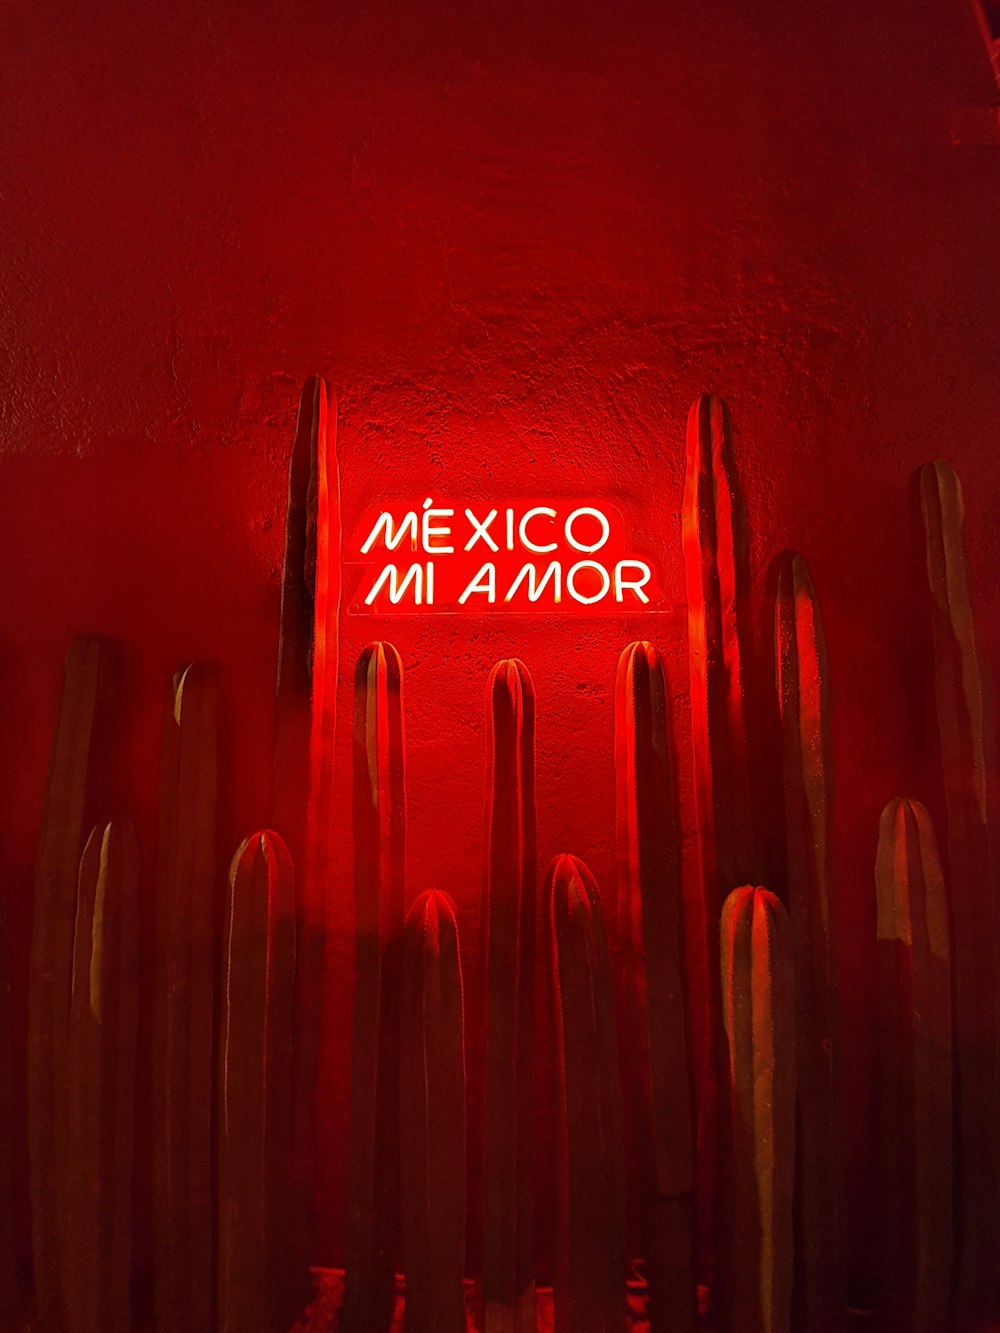 Mexico Mi Amor signage